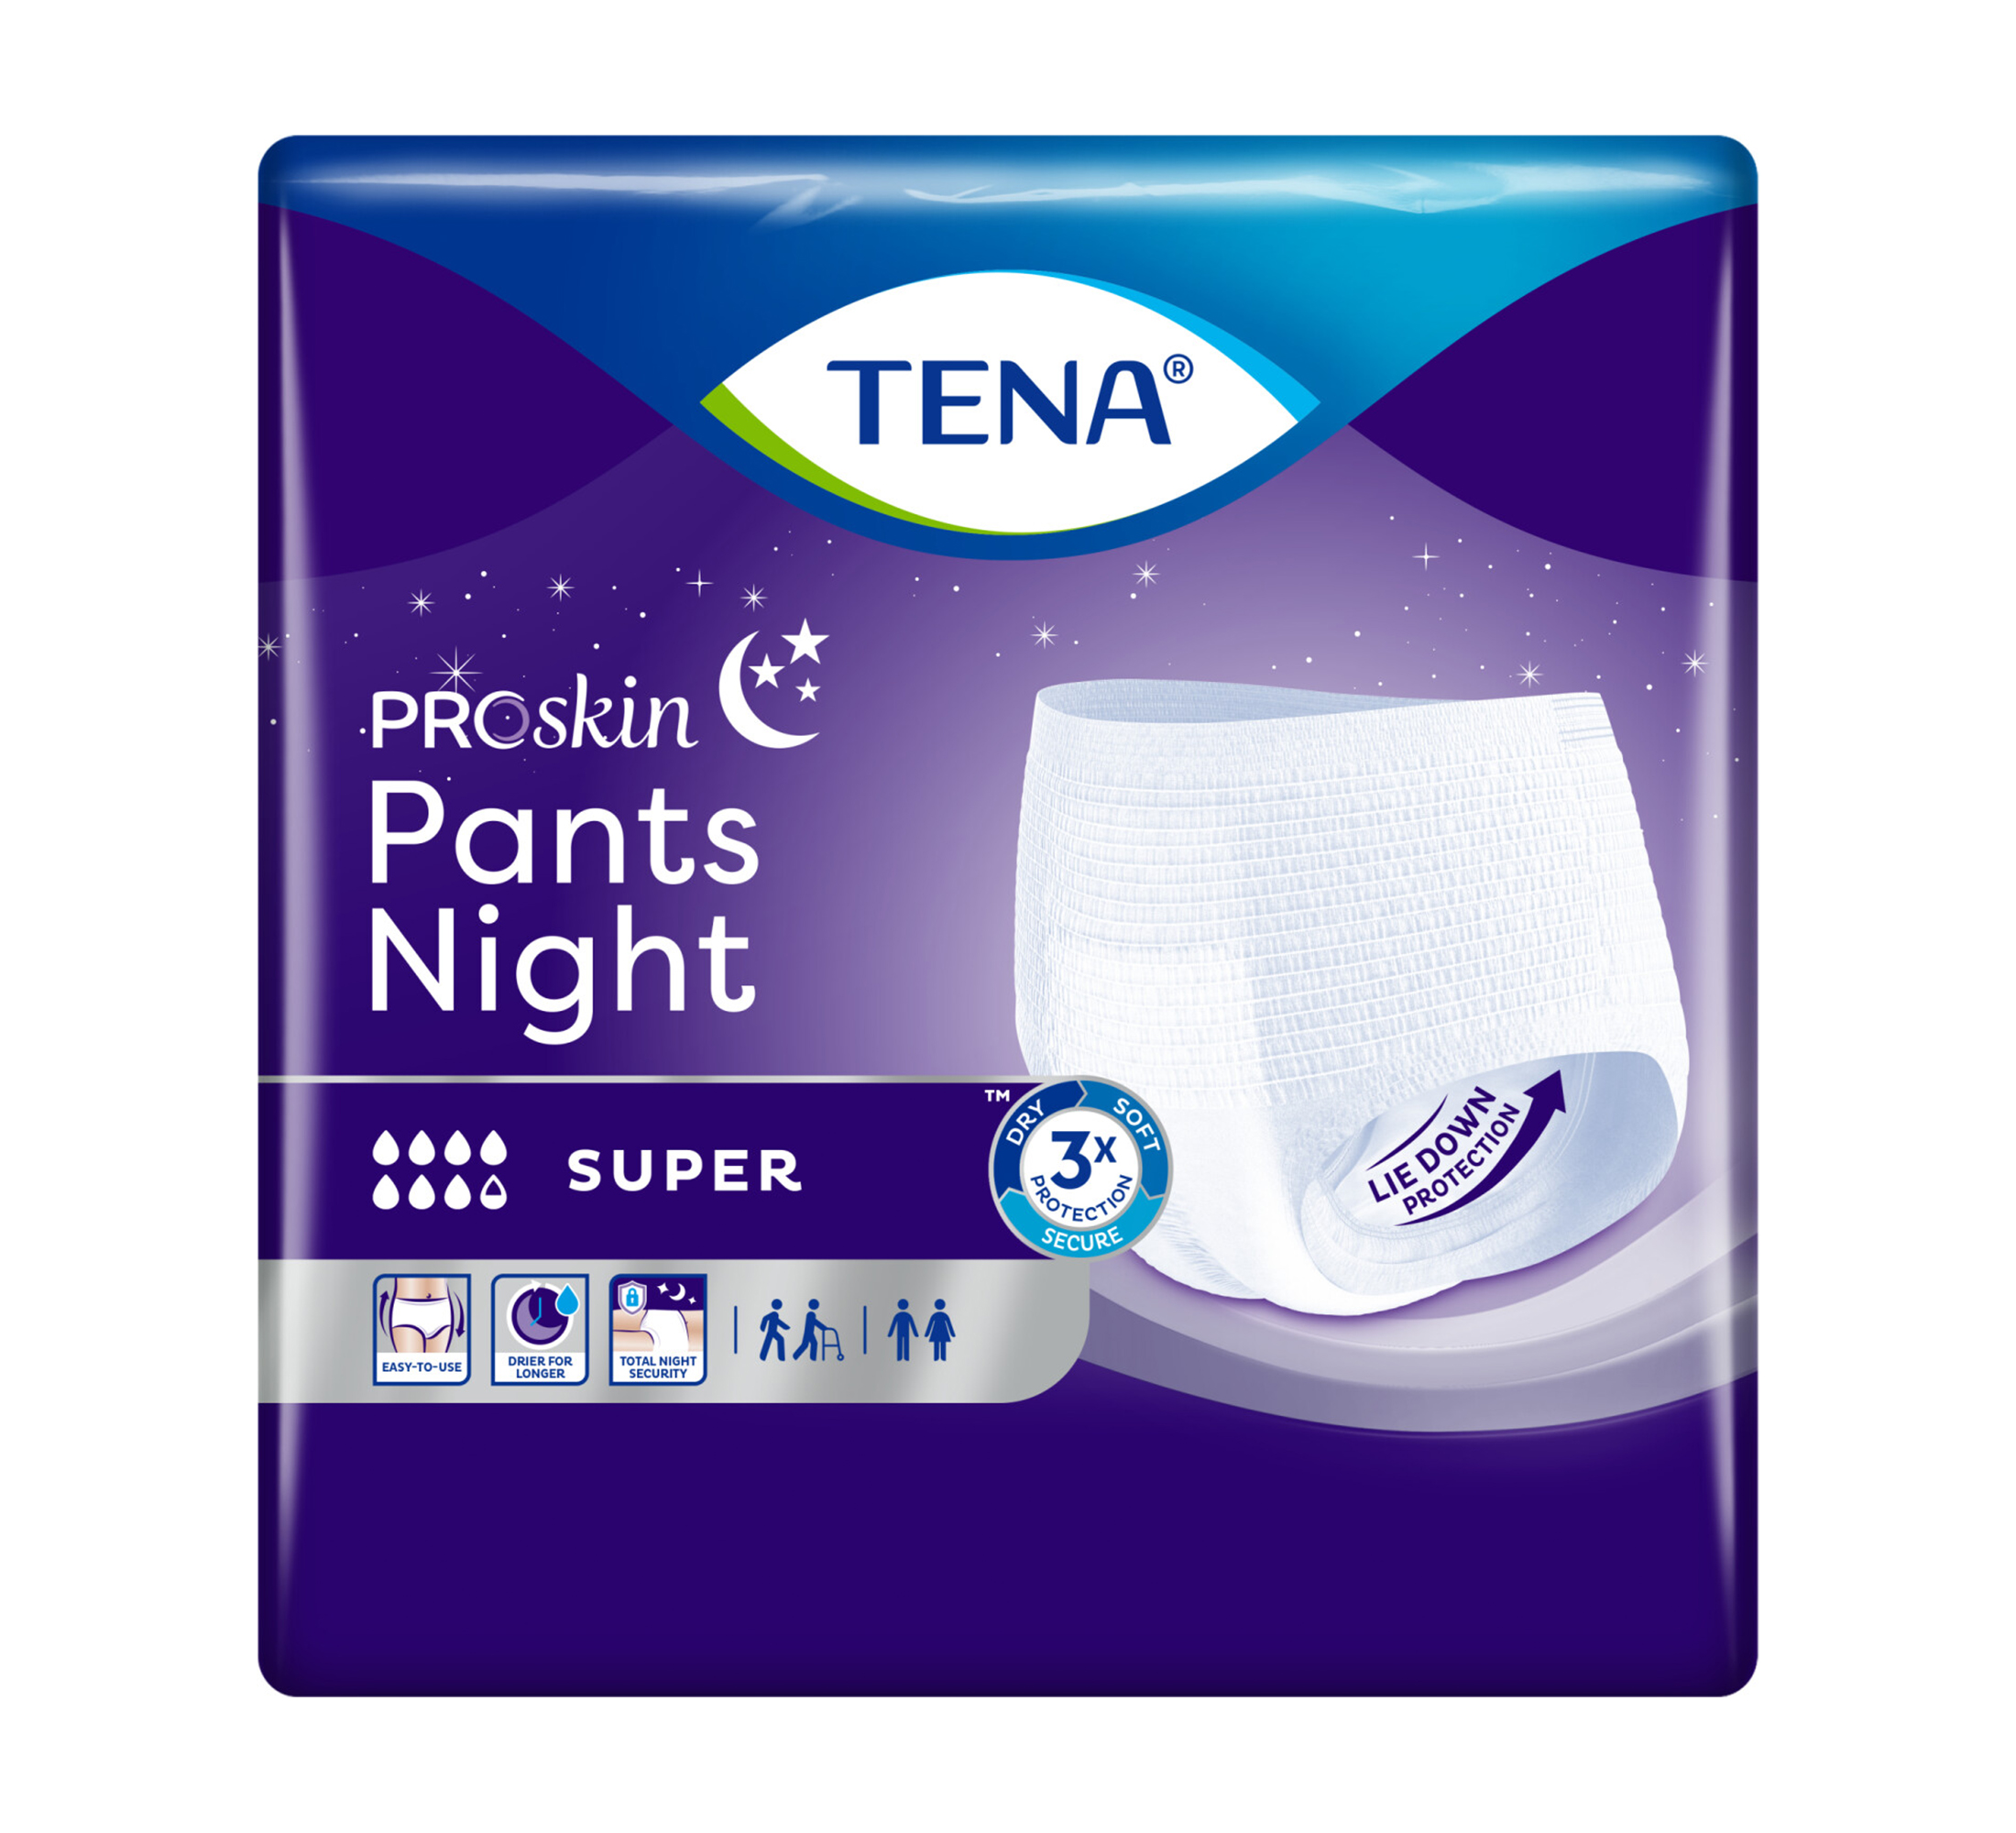 TENA ProSkin Pants Night Einweghosen, Saugfähigkeit 8/8, Größe M, 10 Stk.